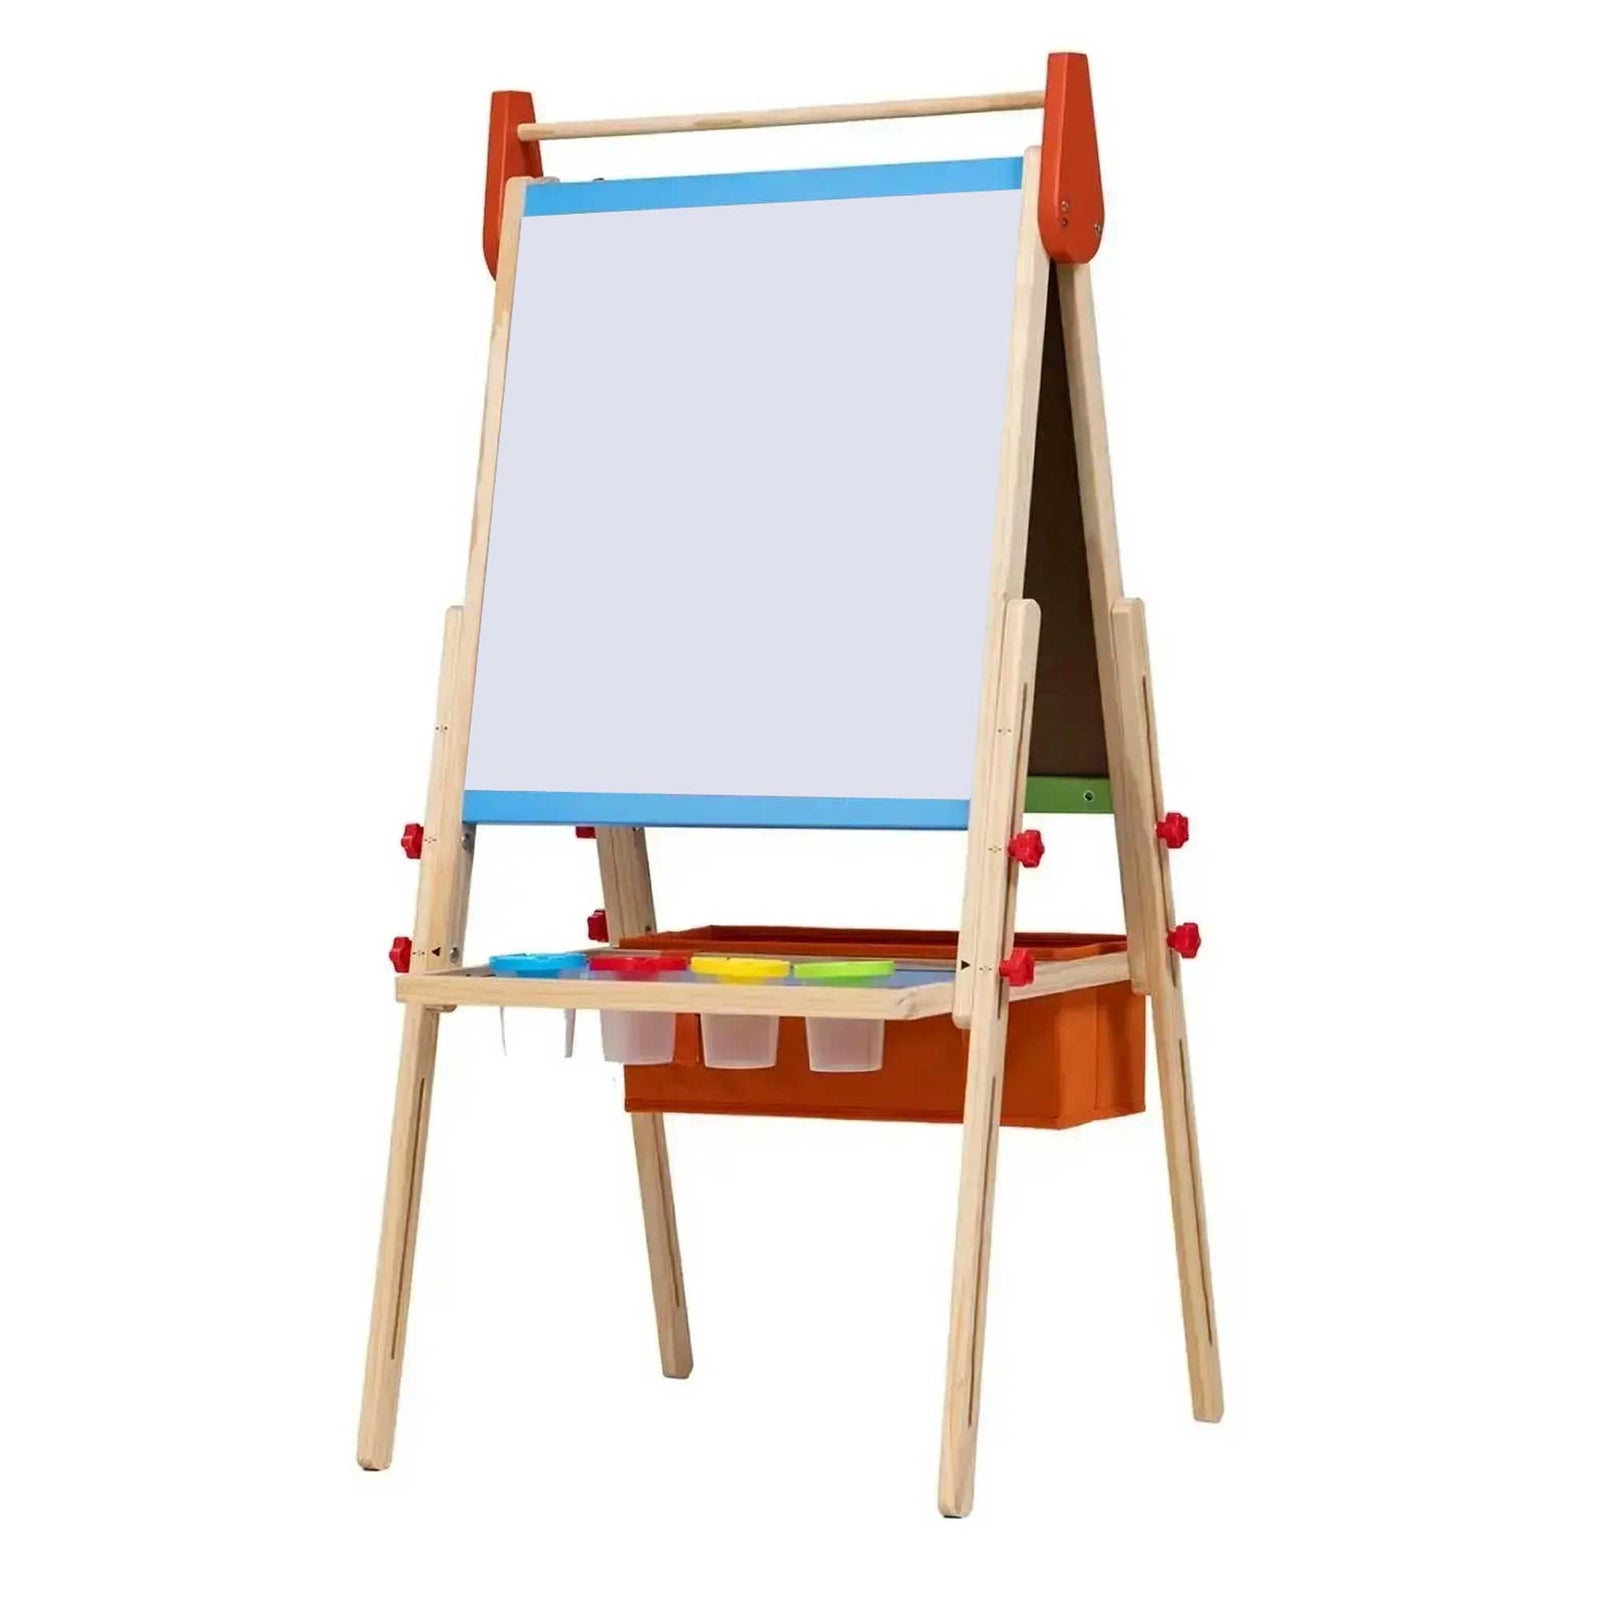 MEEDEN Kids Art Easel-Walnut, Double-Sided Board